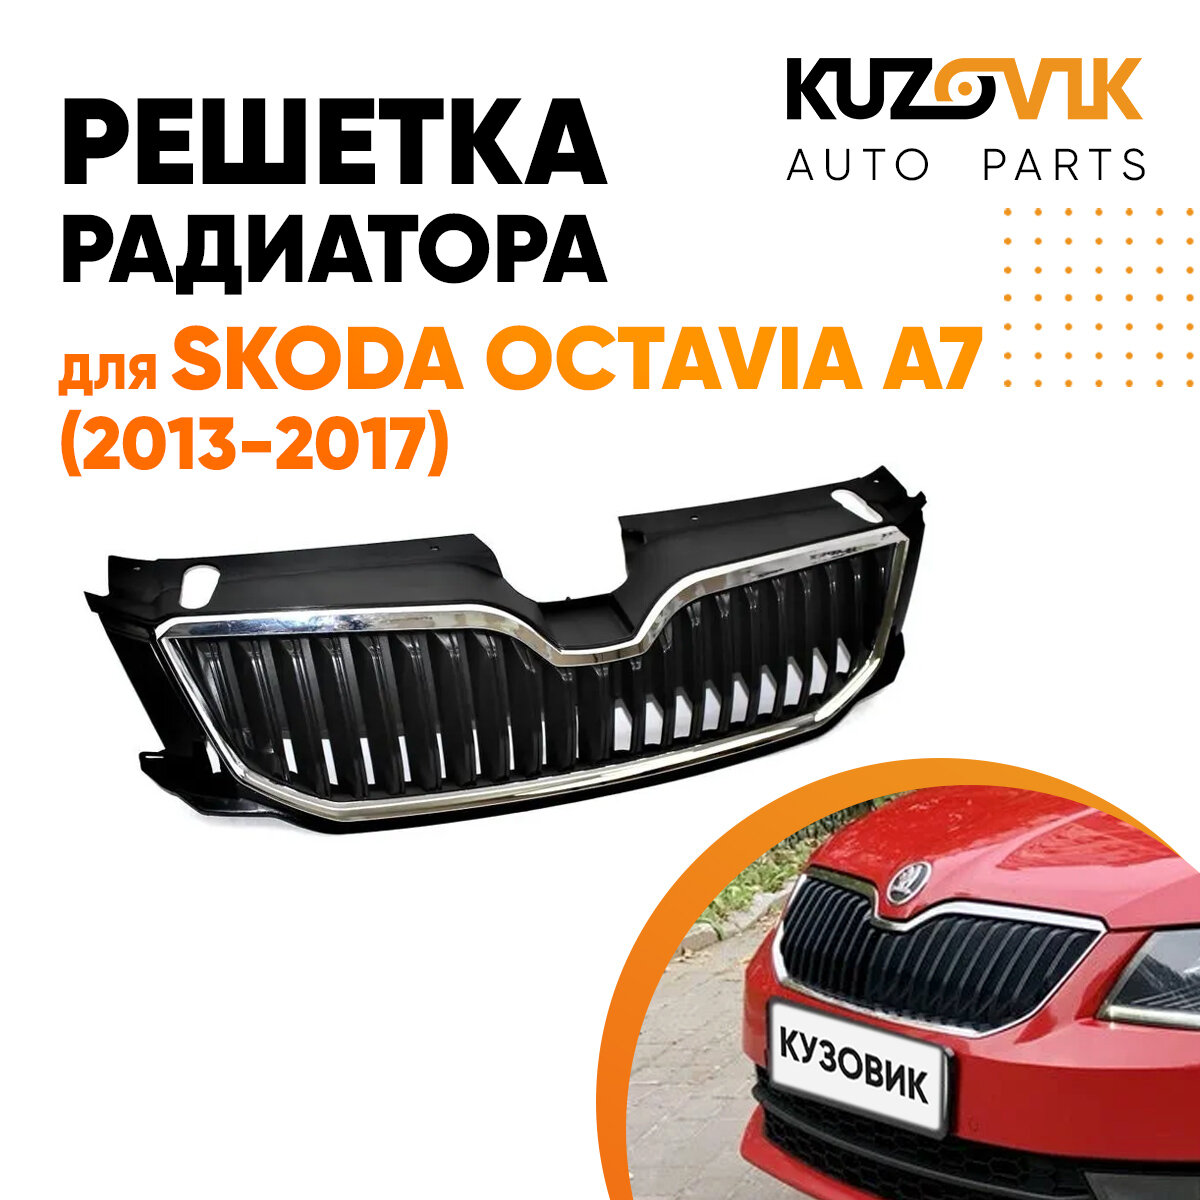 Решётка радиатора для Шкода Октавия А7 Skoda Octavia A7 (2013-2017) с хром молдингом решетка бампера, накладка